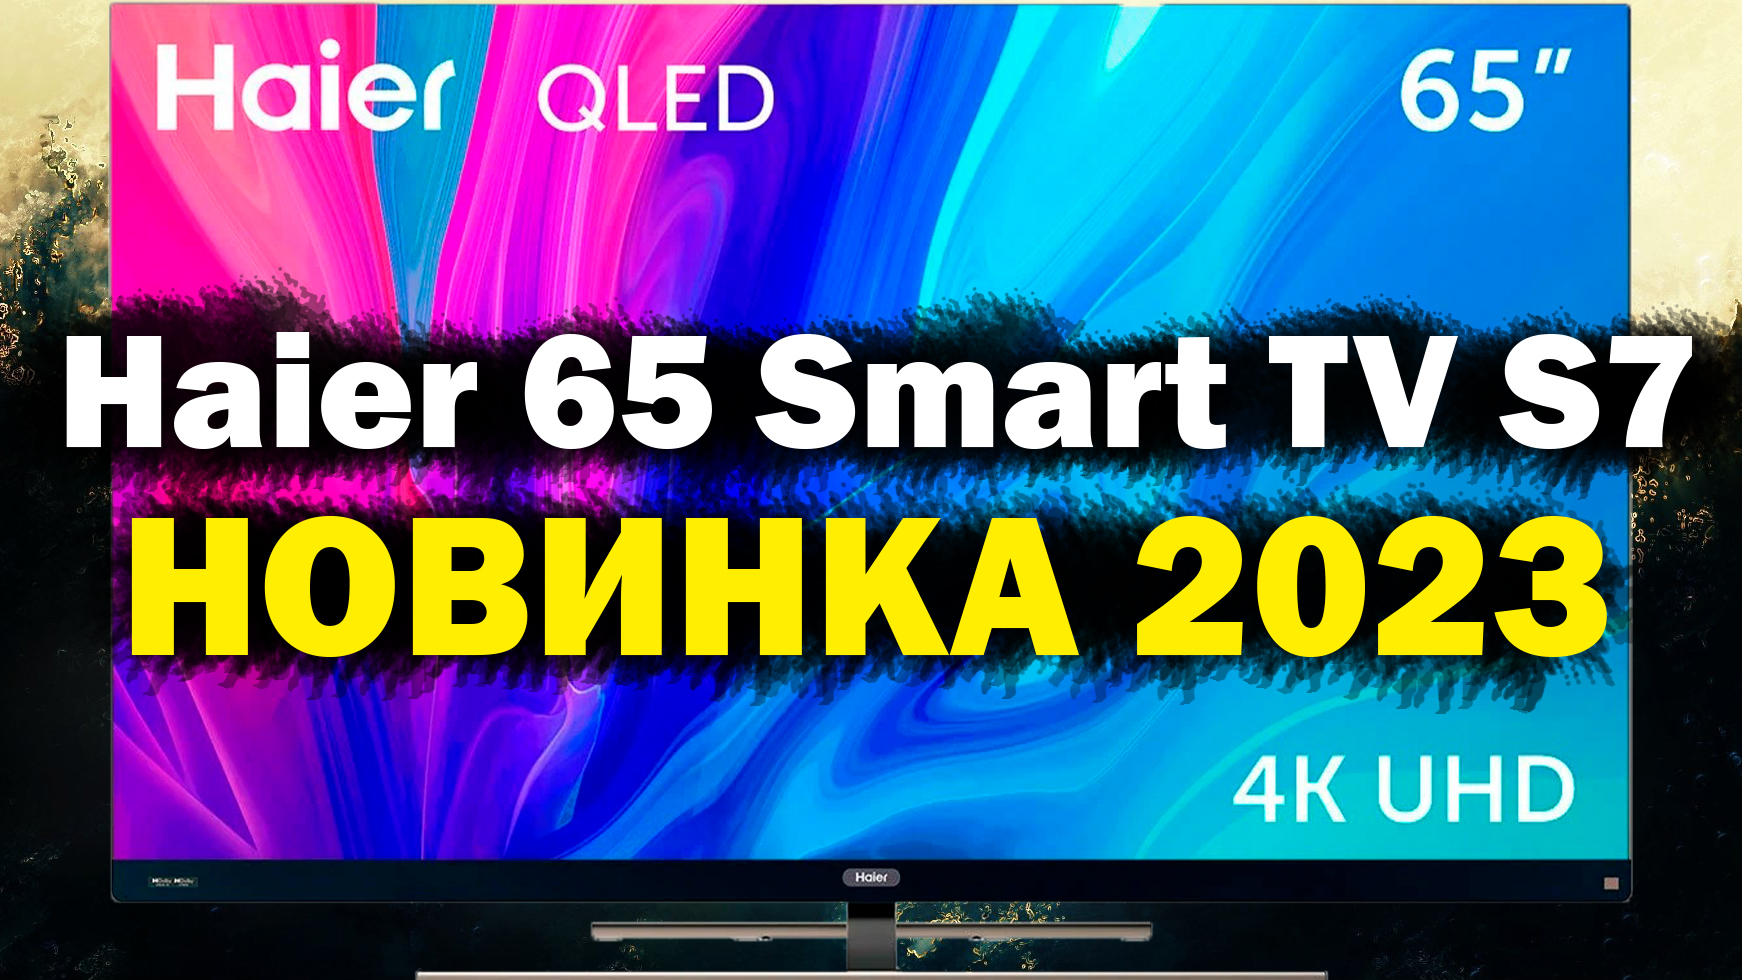 Телевизоры haier 65 обзор. Haier Smart TV s7. Телевизор Muller 65’. Хаер 65 смарт ТВ s1. Хаер 65 смарт ТВ s1 размер.